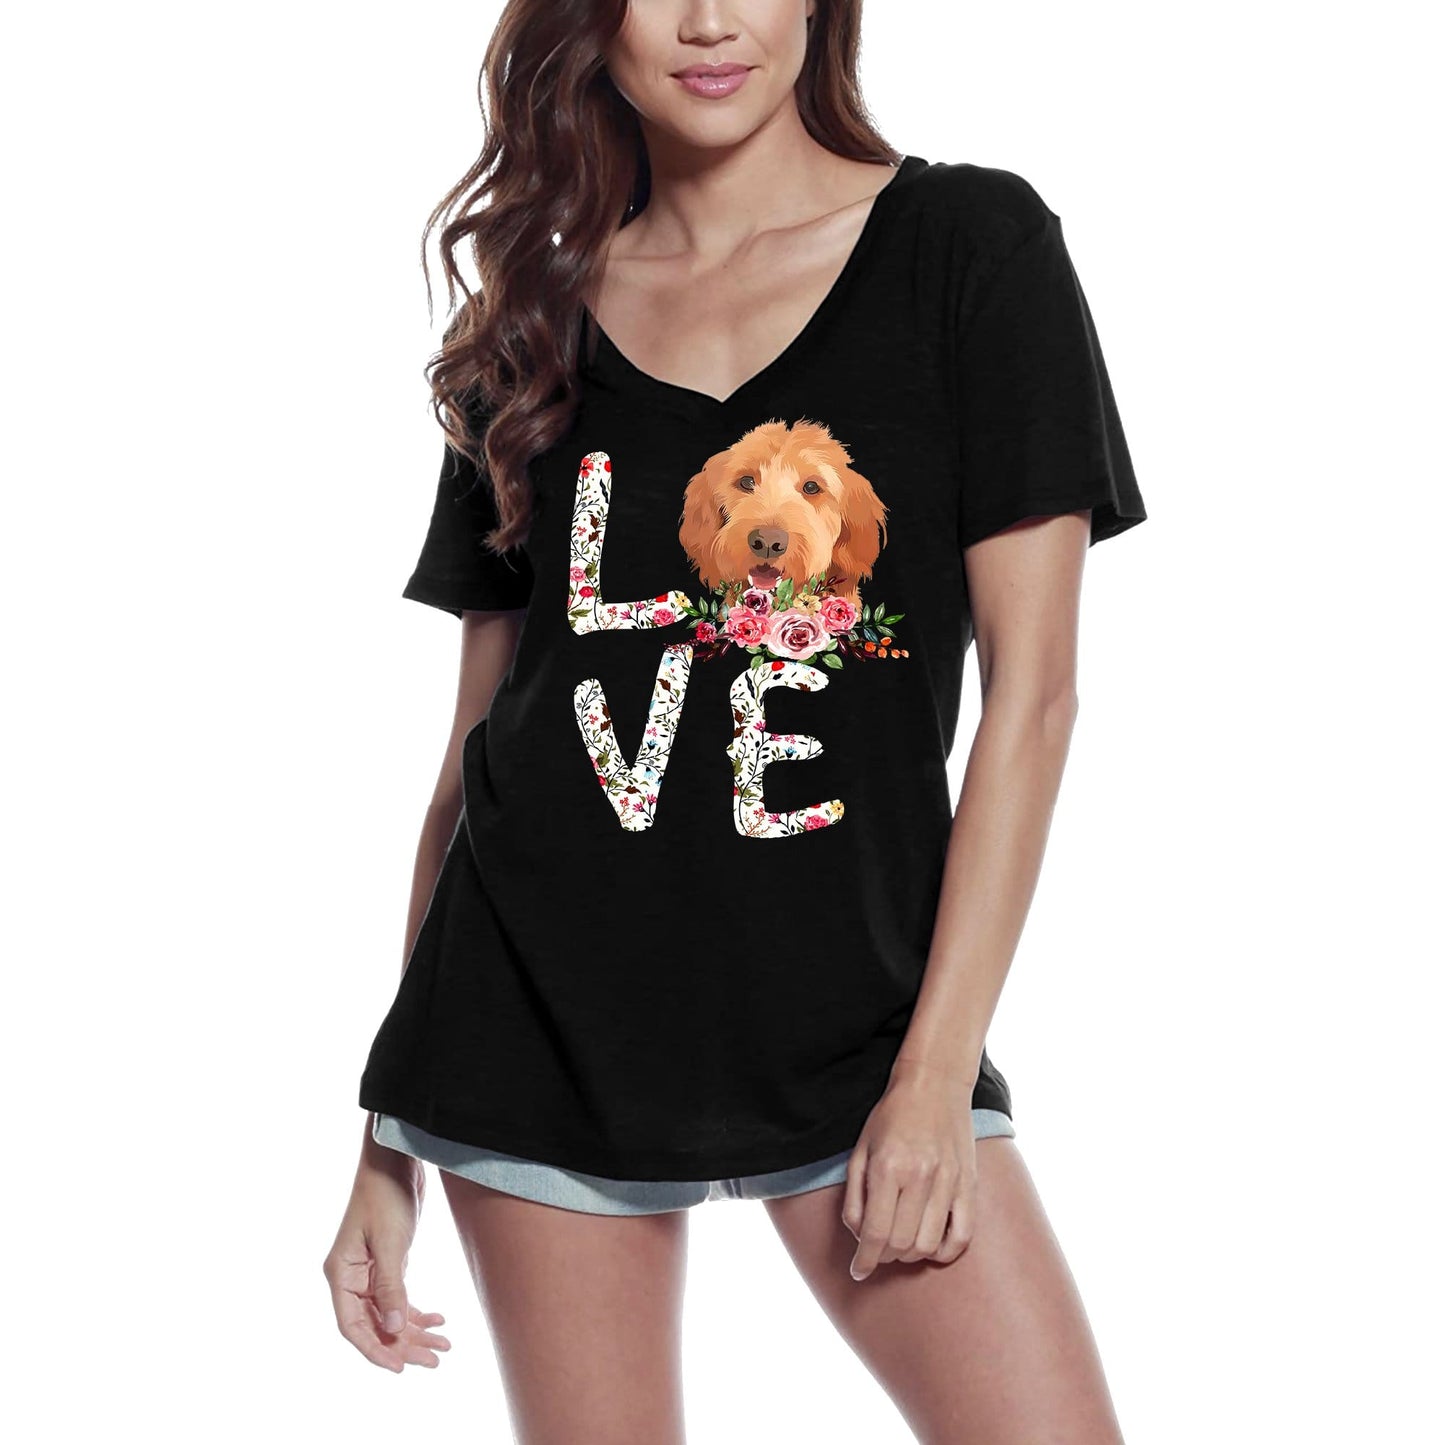 ULTRABASIC Women's T-Shirt Love Fluffy Dogs - Flower Dog Shirt - Pet Lovers Tee Shirt